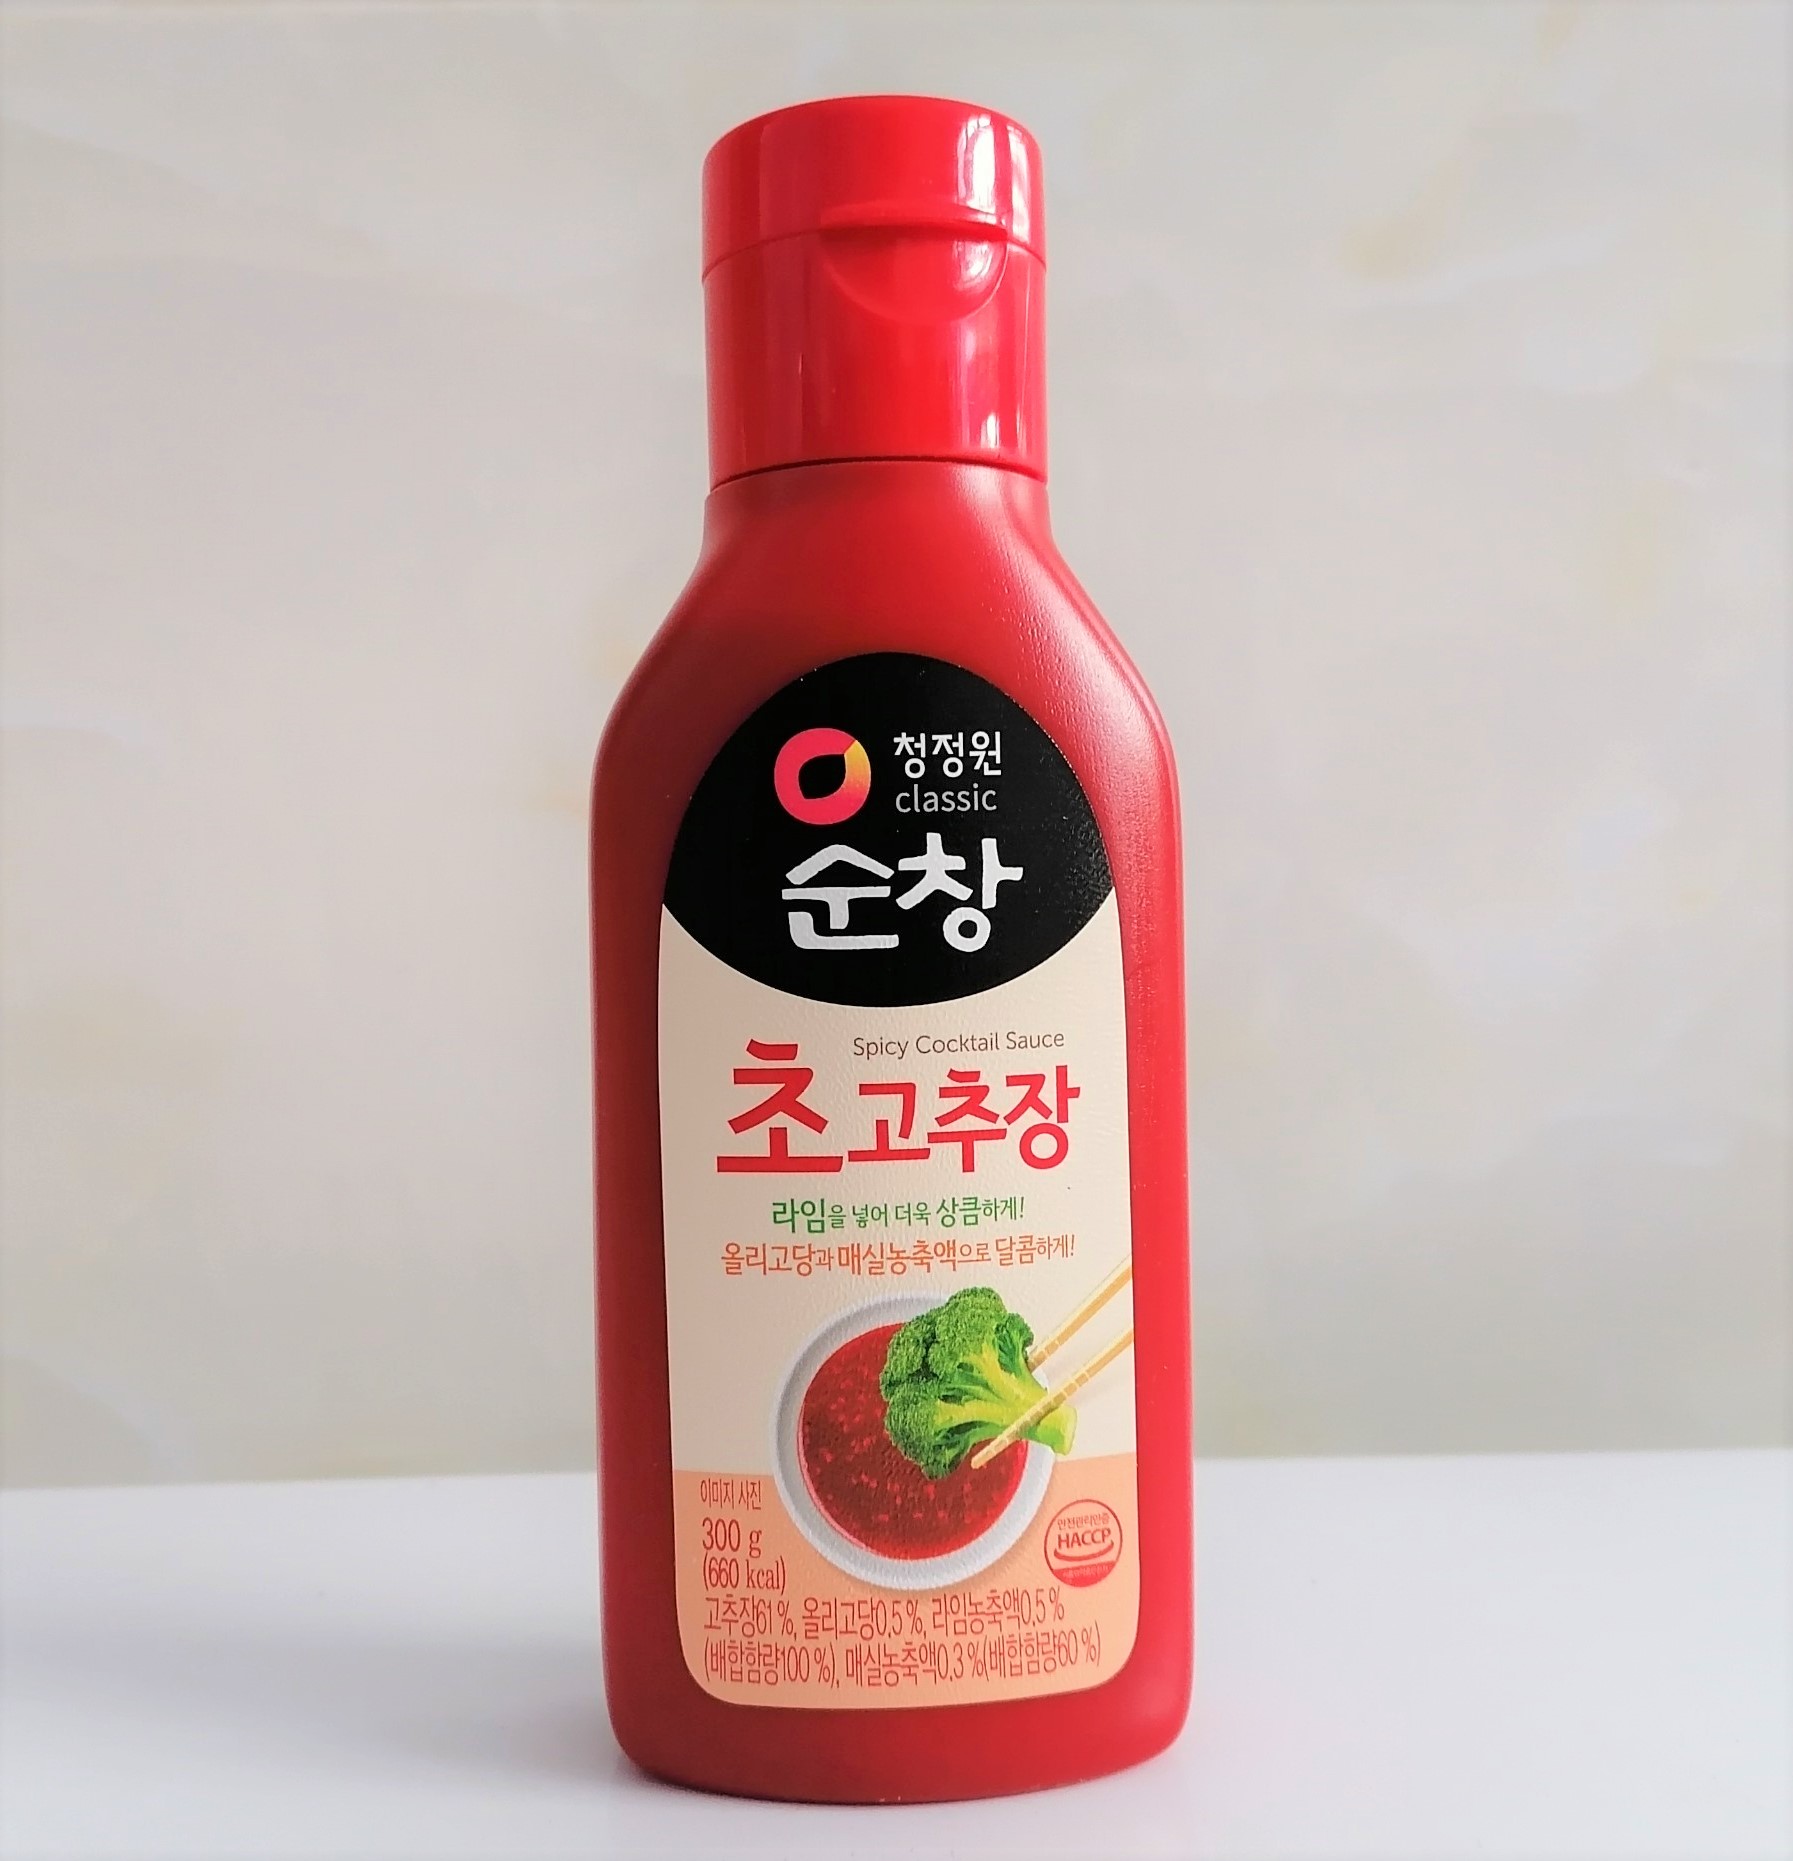 Chai 300g TƯƠNG ỚT VỊ CAY NGỌT Daesang Korea MIWON Spicy Cocktail Sauce